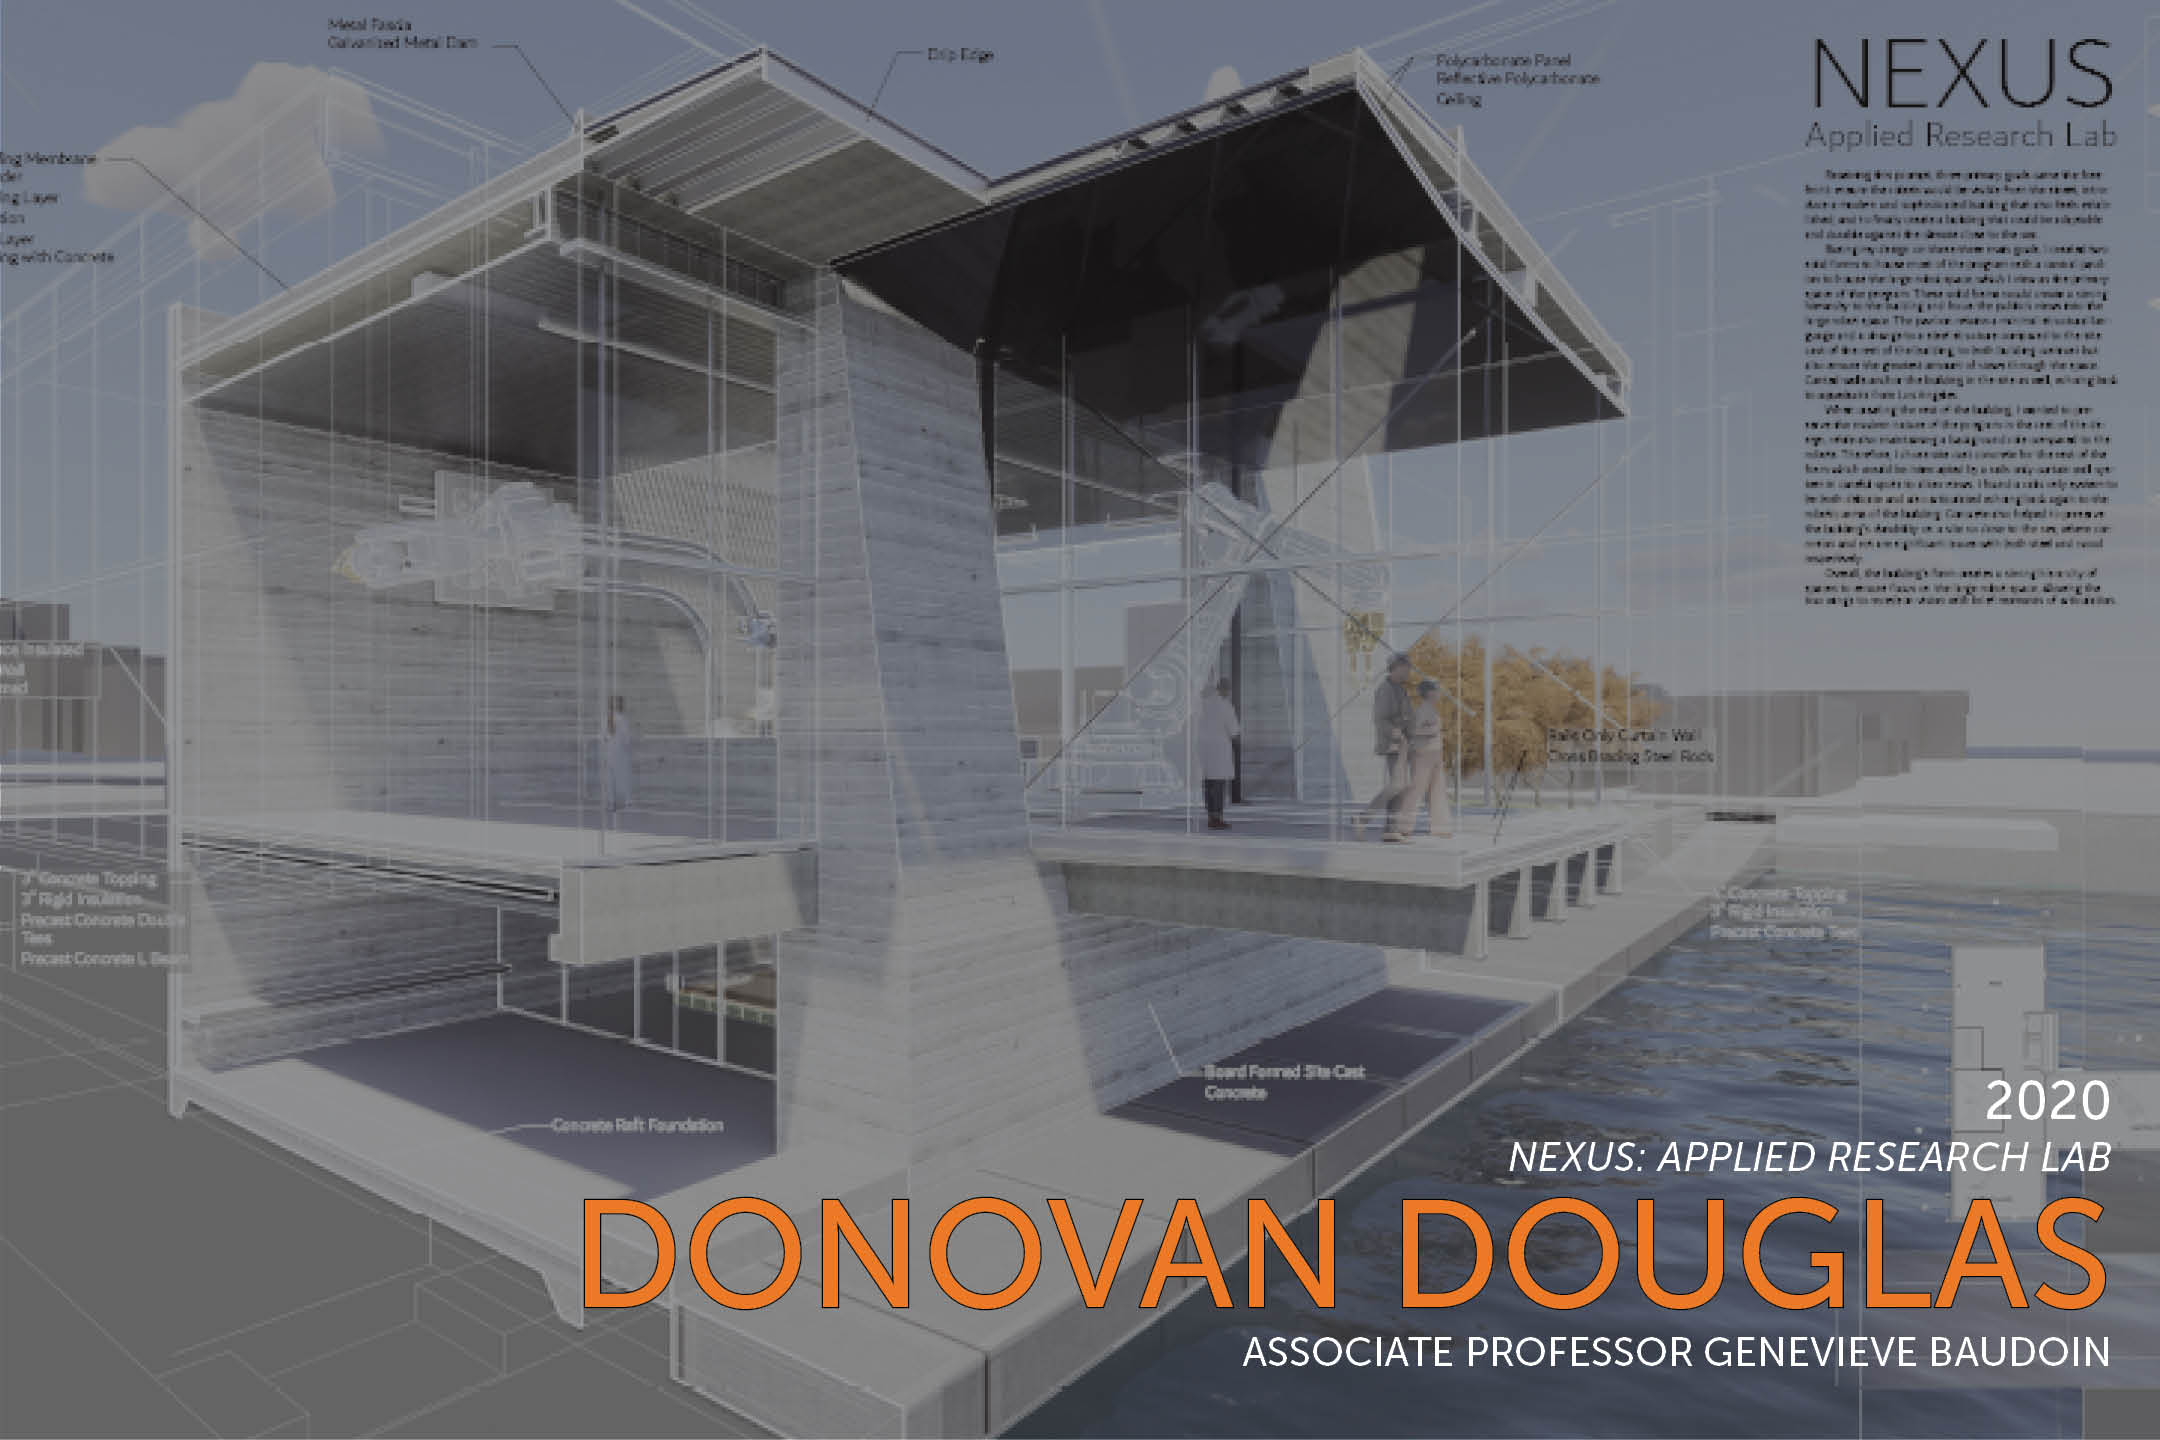 Donovan Douglas